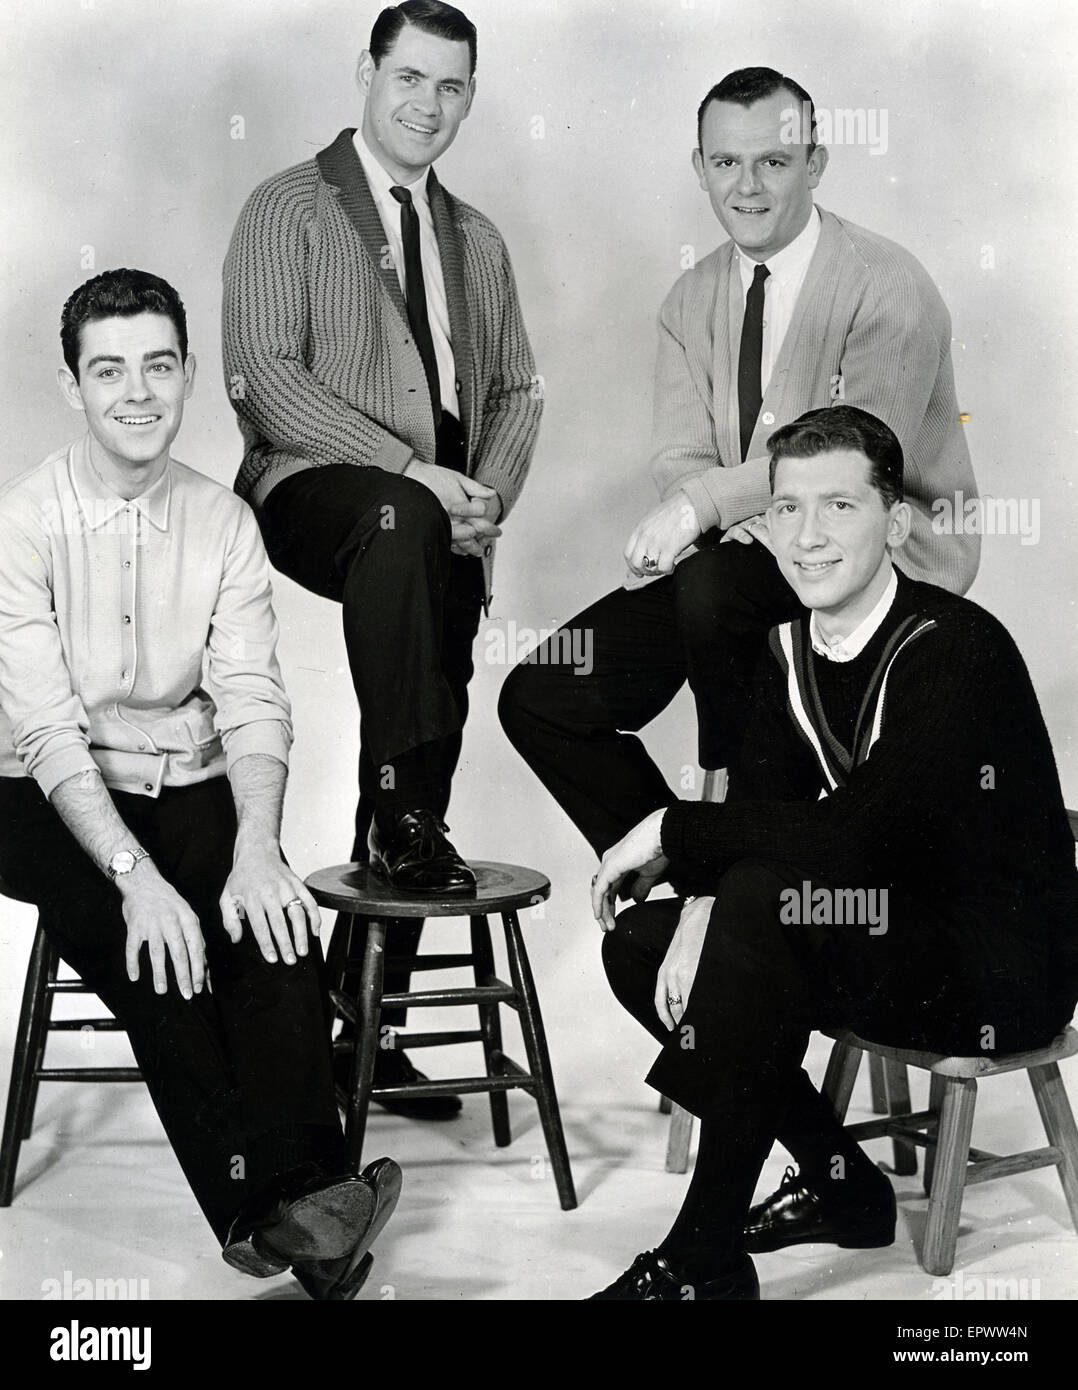 Quattro santi noi del gruppo vocale circa 1962 Foto Stock